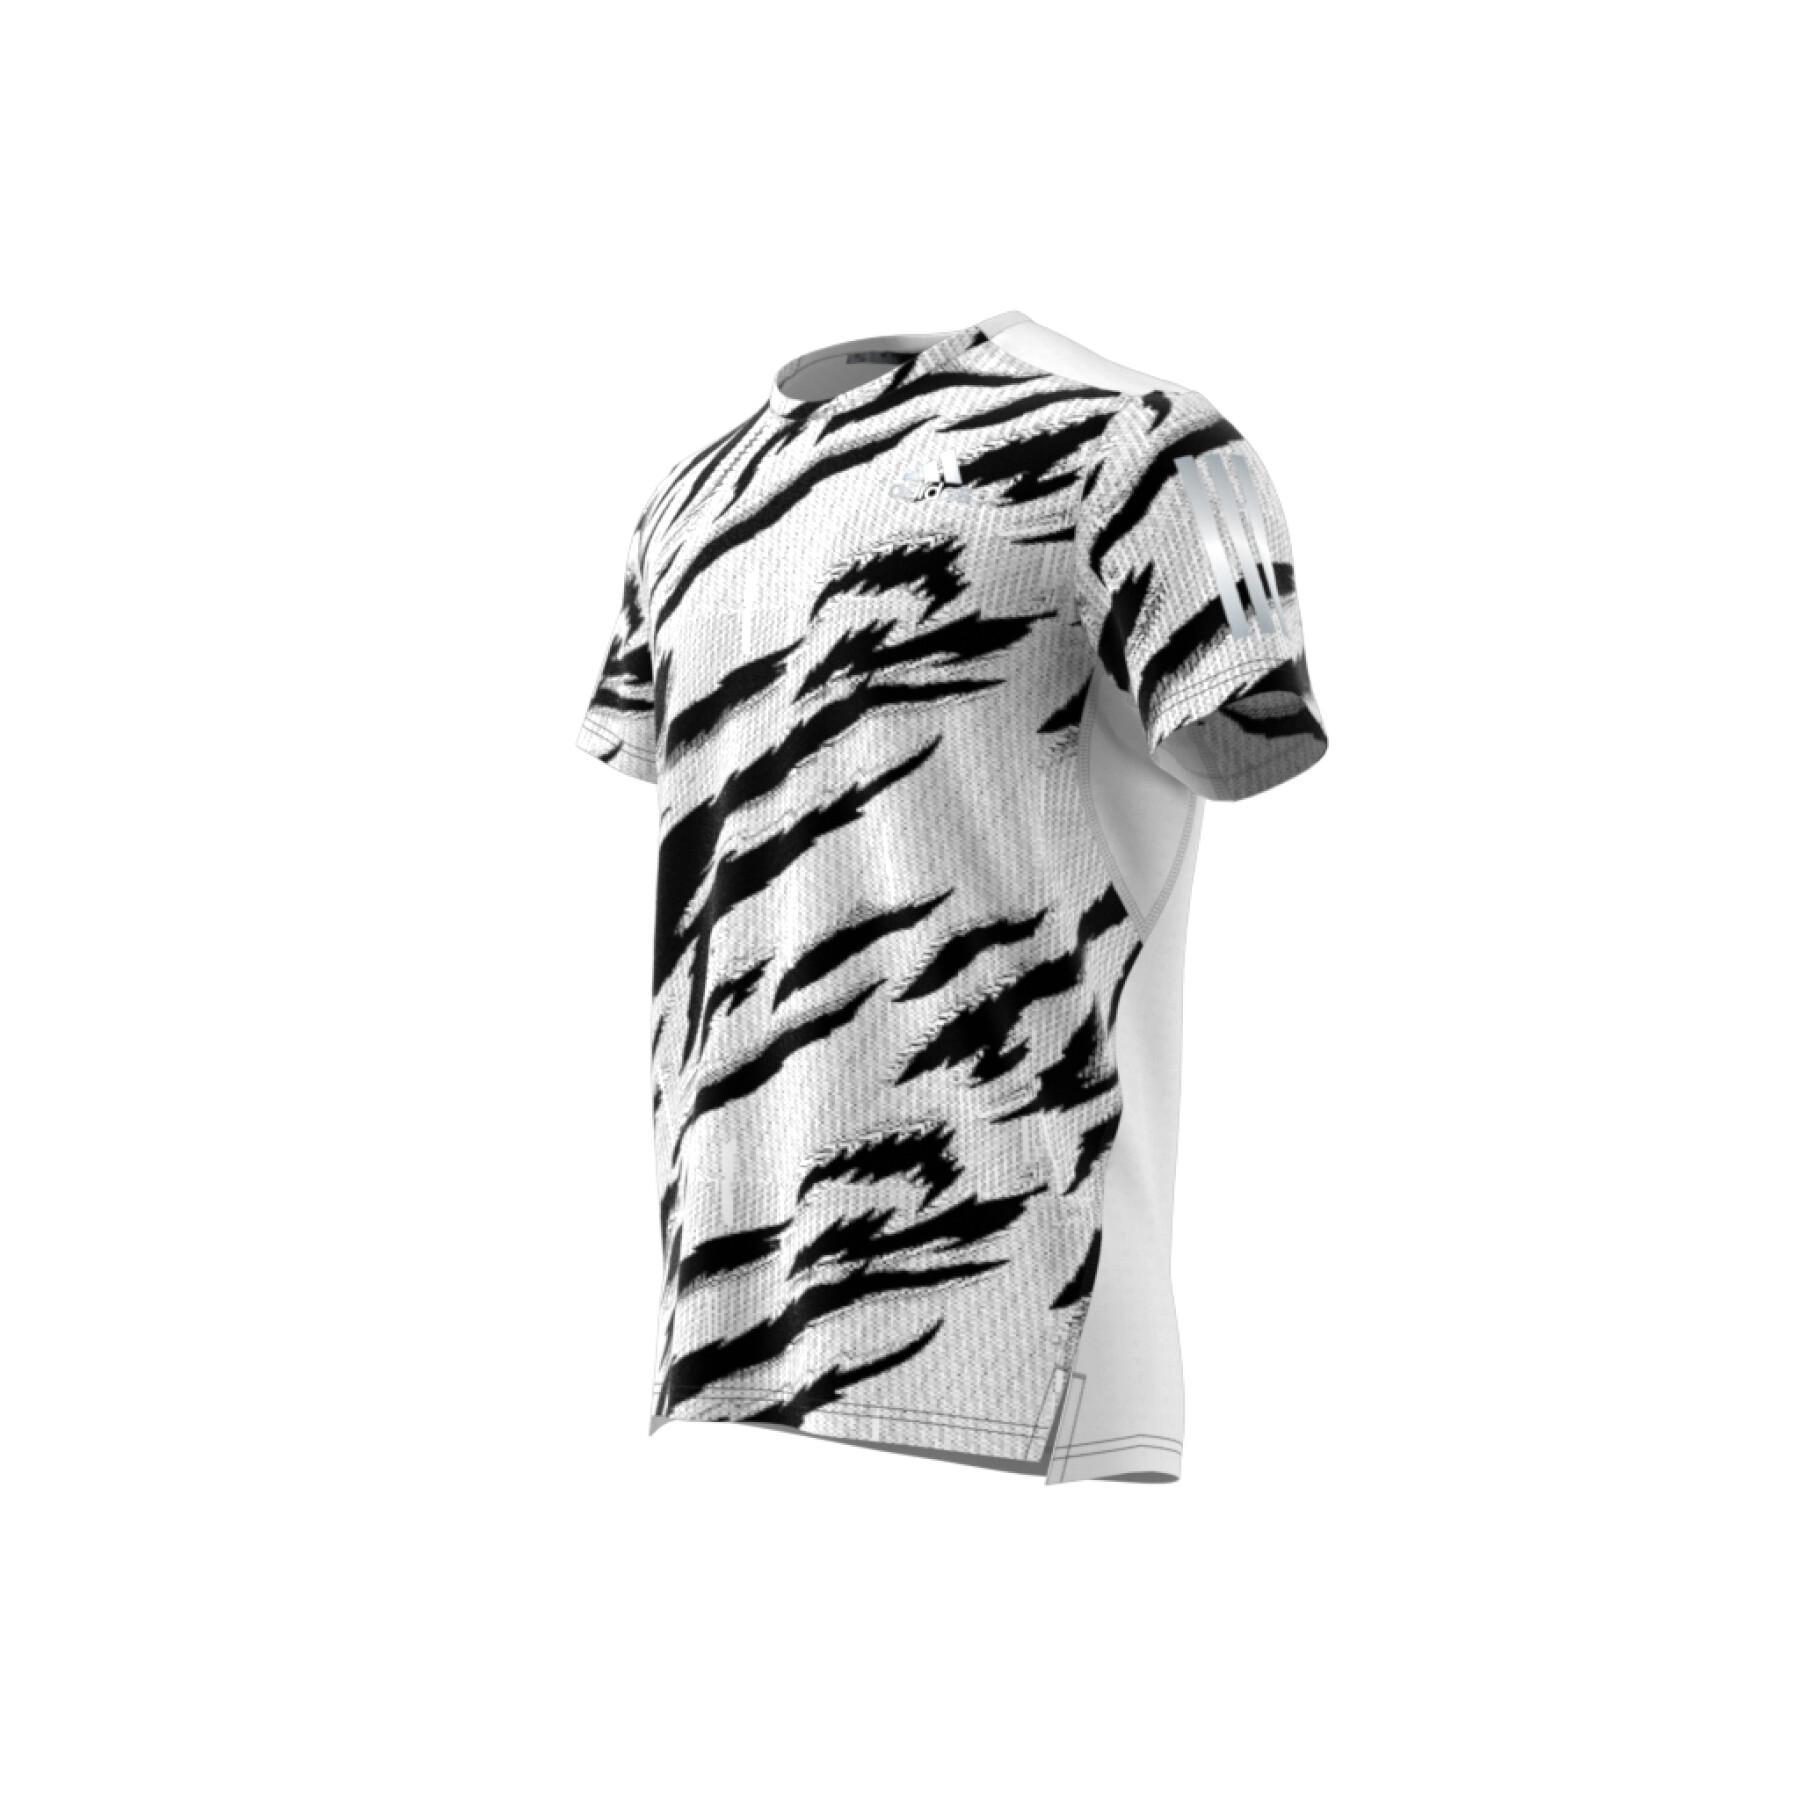 Camiseta adidas Own The Run Tiger